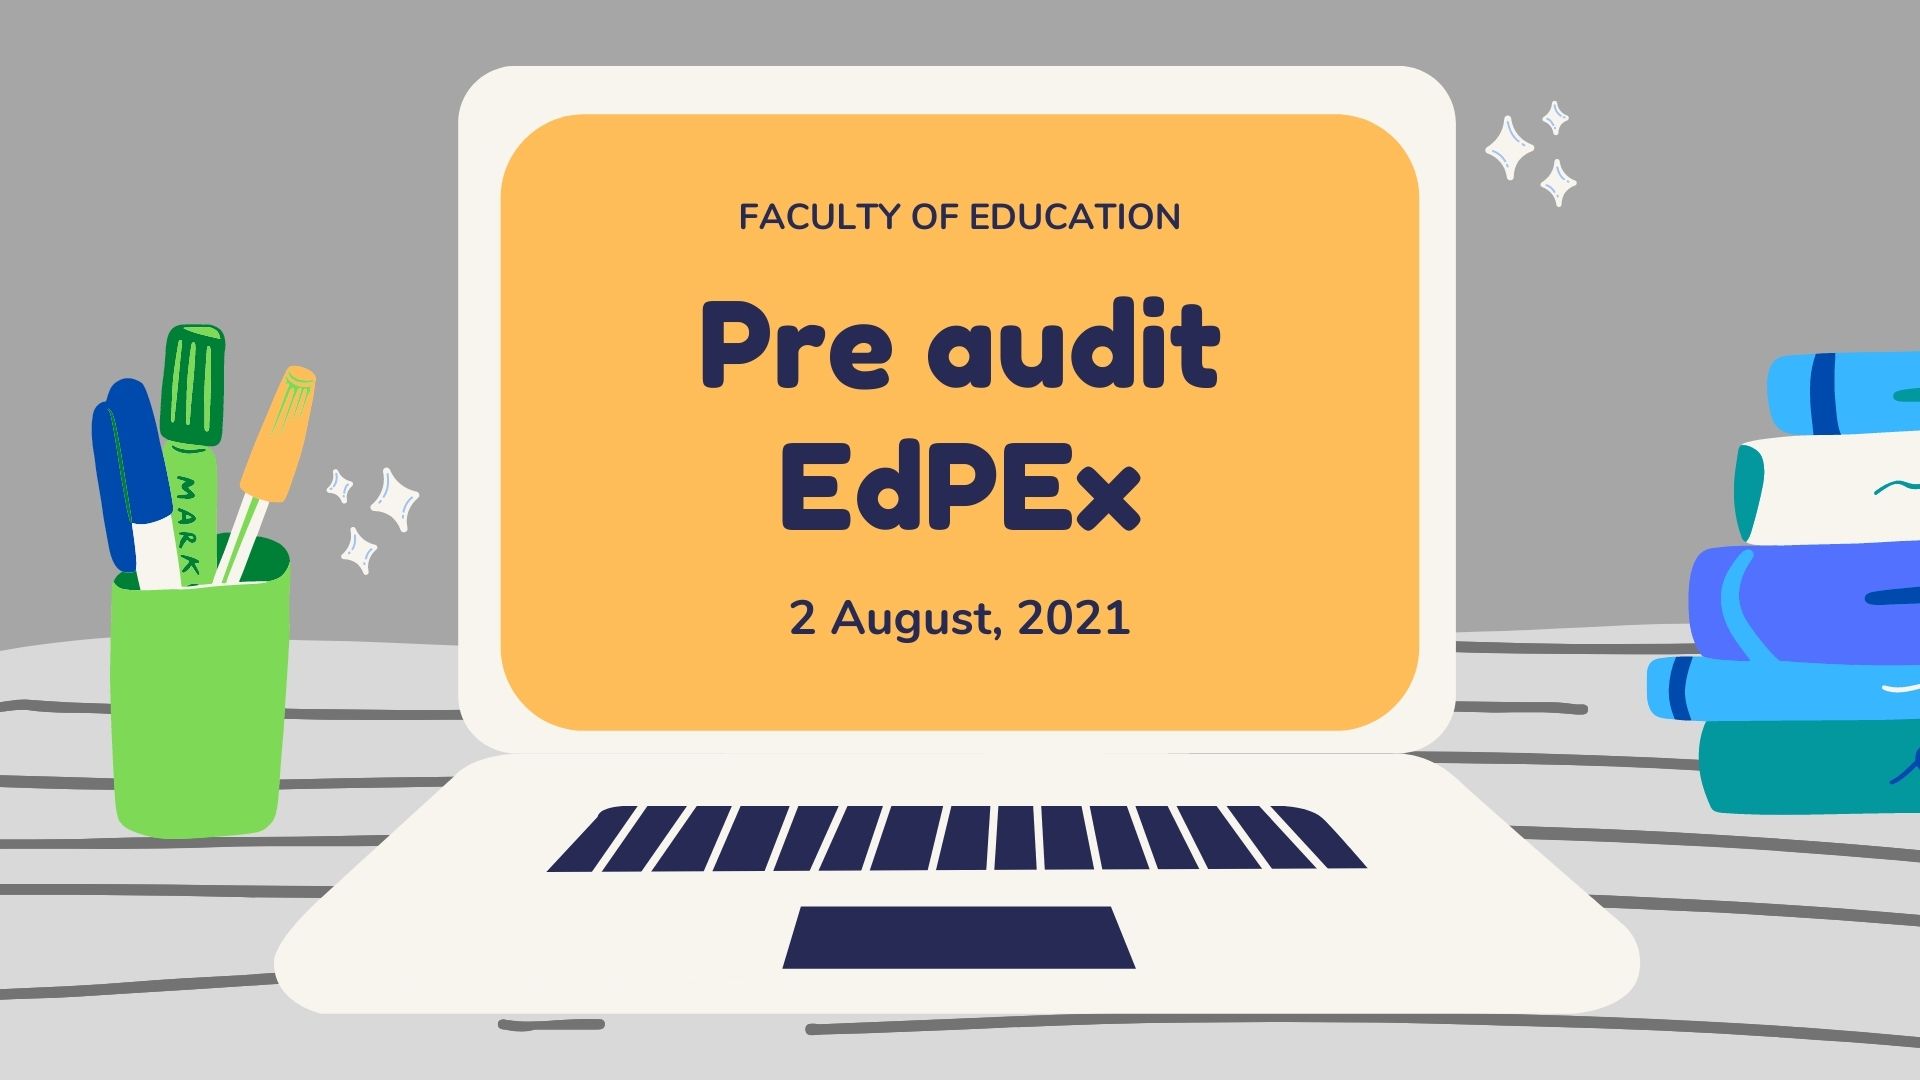 การตรวจประเมิน (Pre-audit) การประกันคุณภาพการศึกษาภายใน ตามแนวทางเกณฑ์คุณภาพการศึกษาเพื่อการดำเนินงานที่เป็นเลิศ (EdPEx)